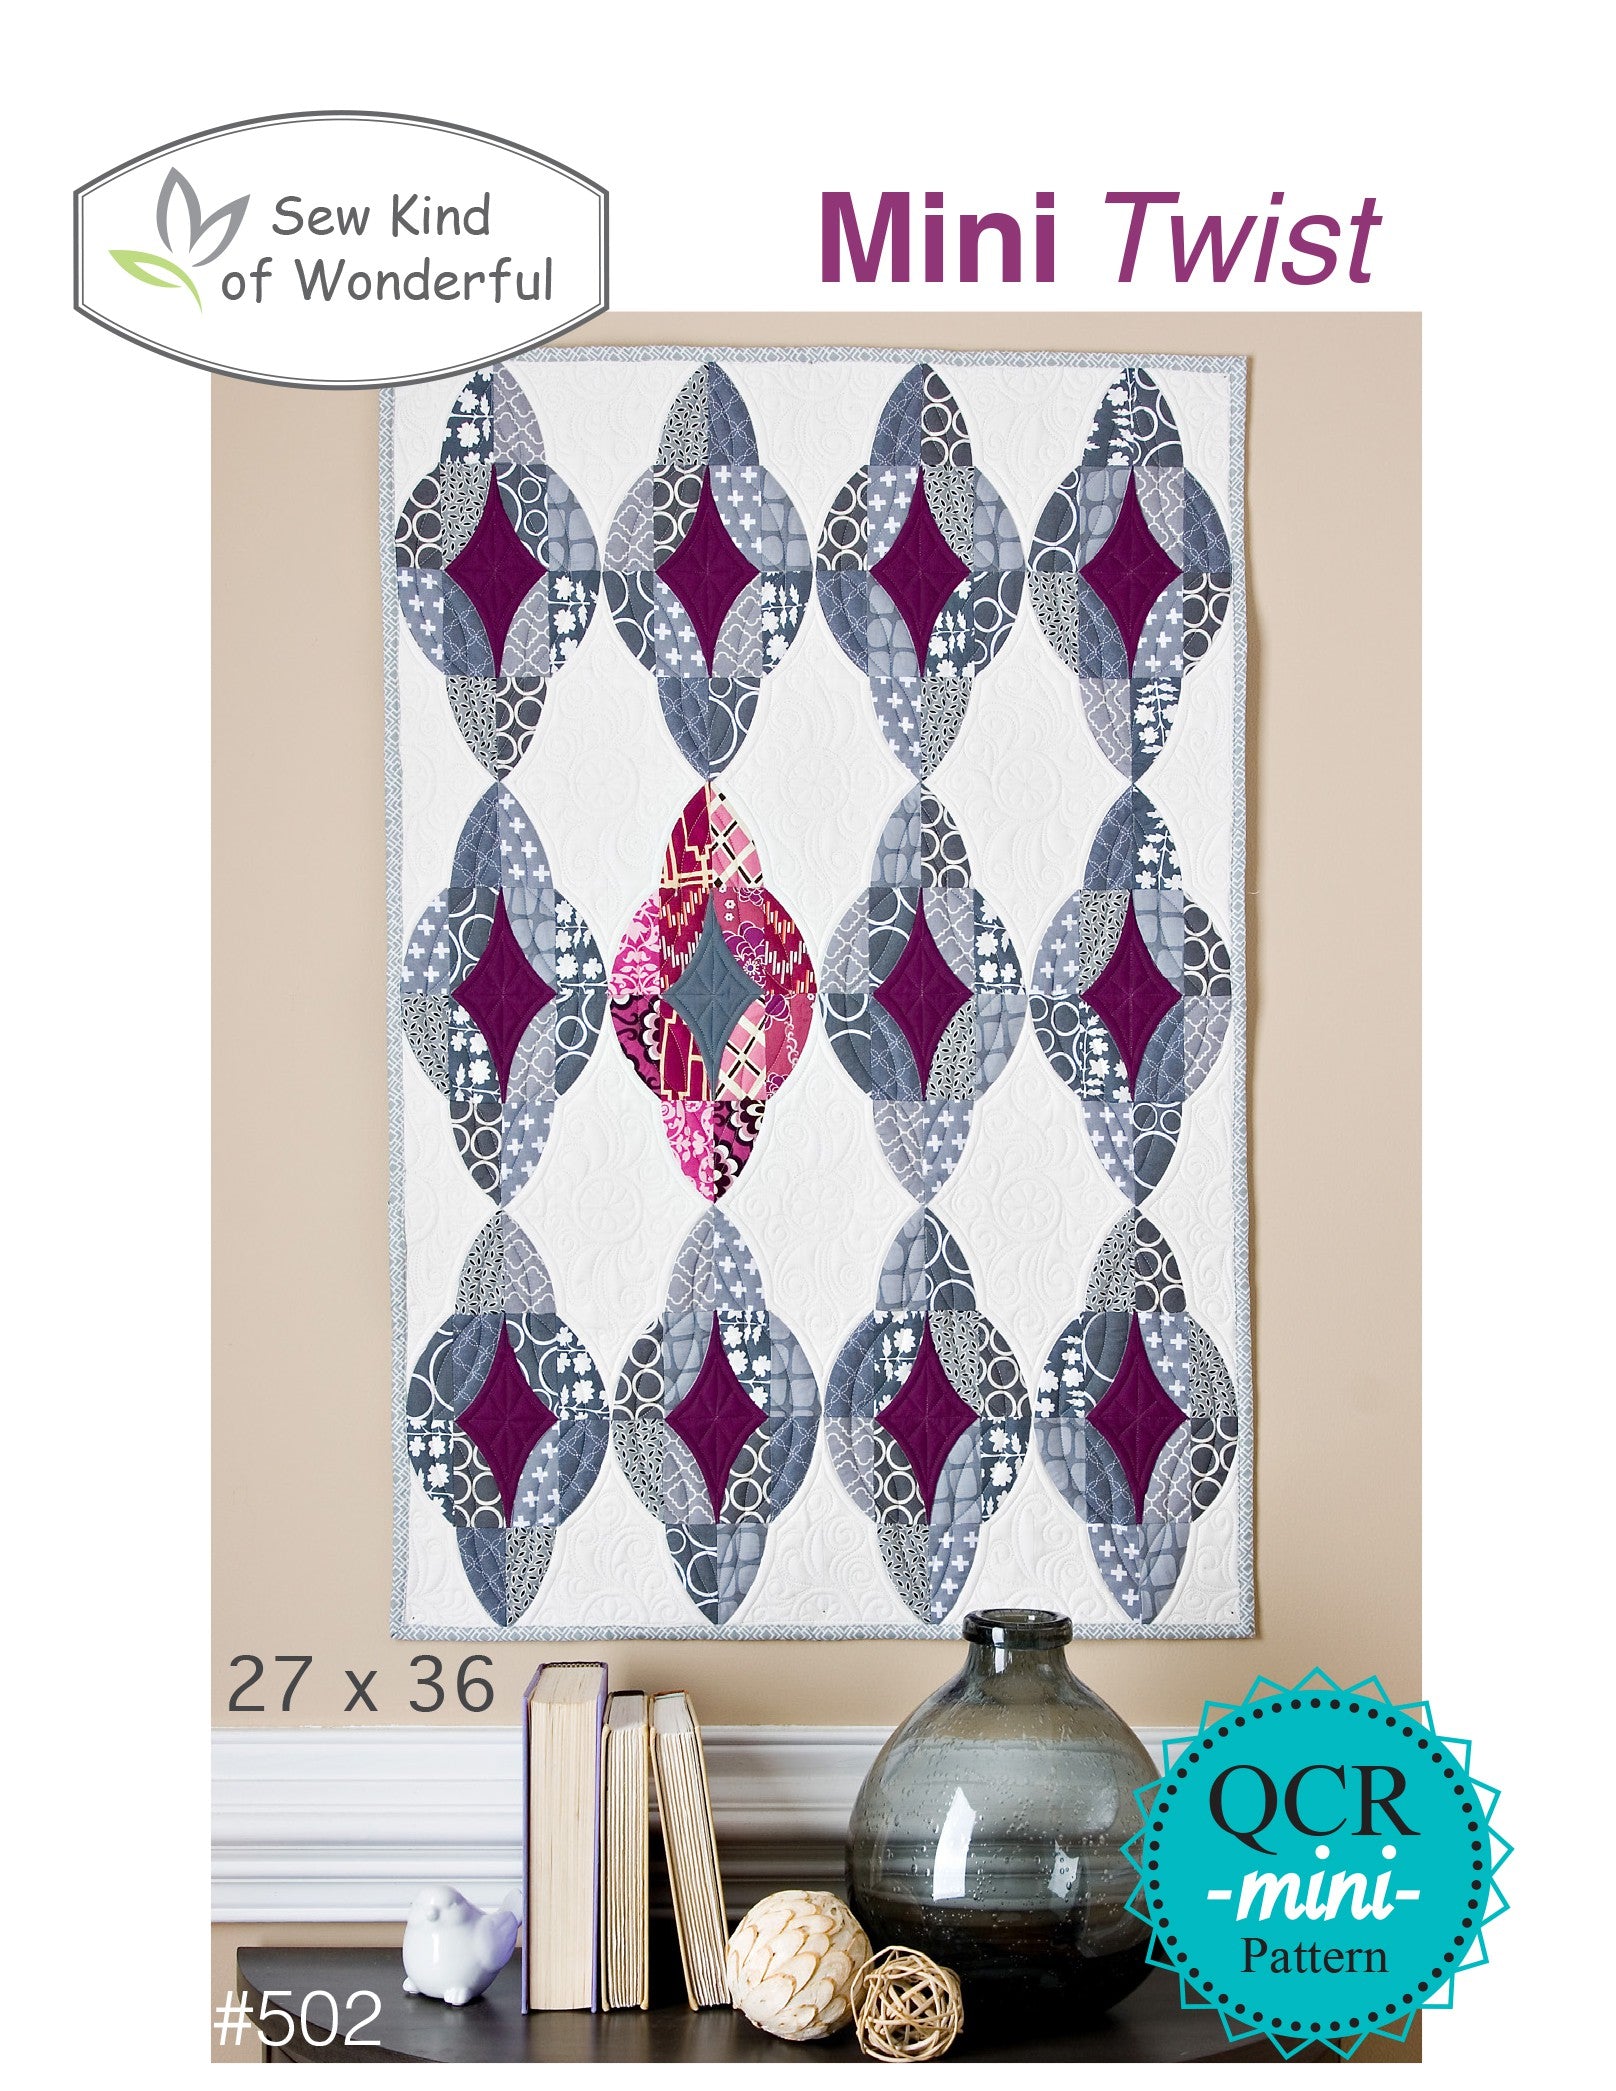 Mini Twist Quilt Pattern by Jenny Pedigo of Sew Kind of Wonderful